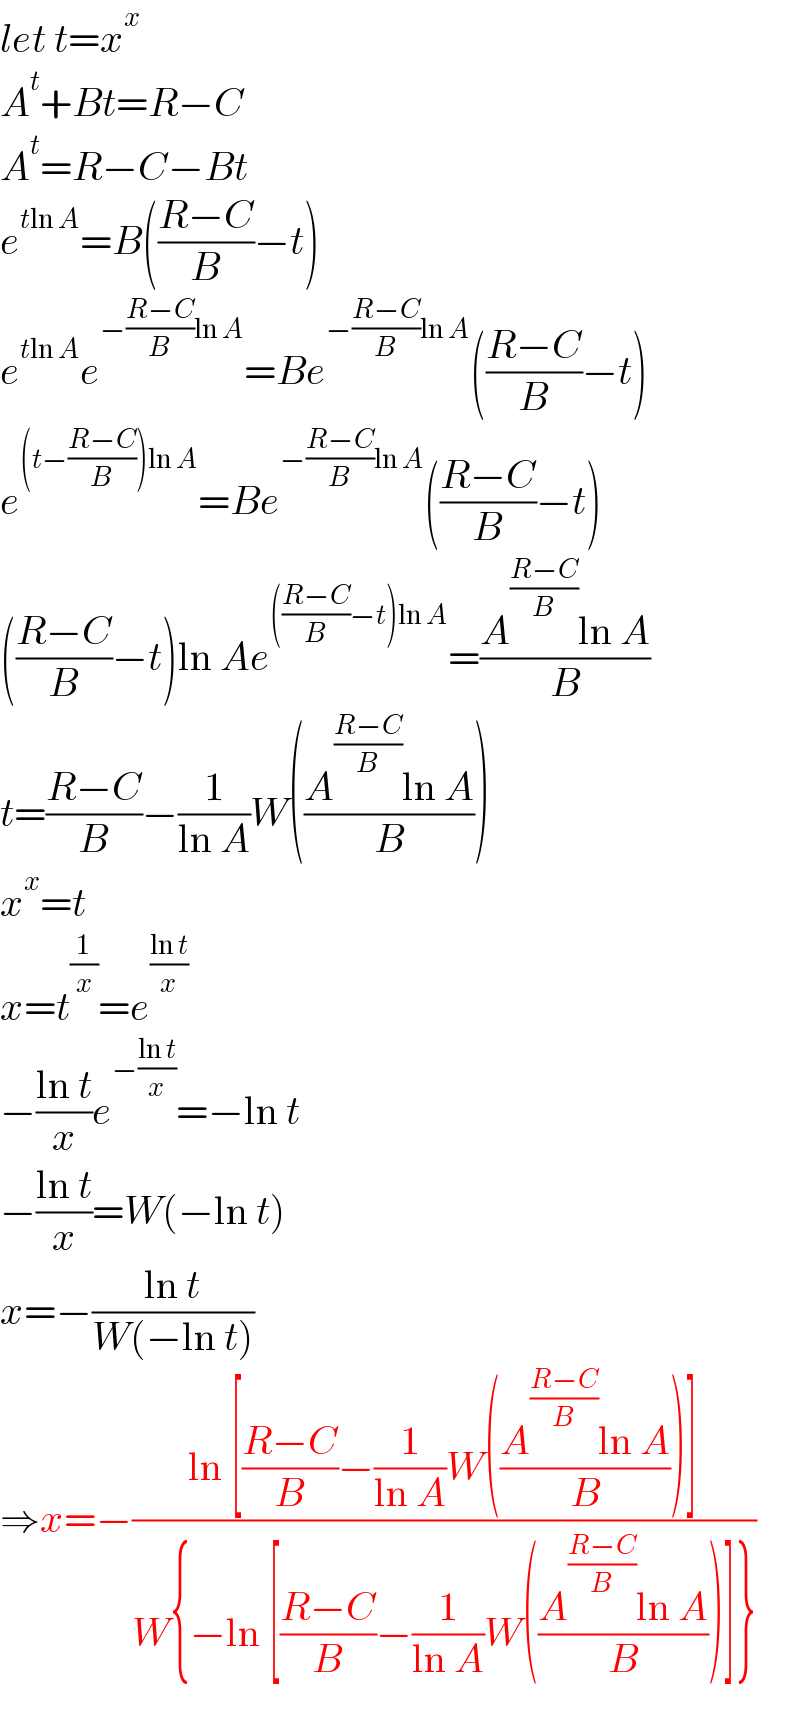 let t=x^x   A^t +Bt=R−C  A^t =R−C−Bt  e^(tln A) =B(((R−C)/B)−t)  e^(tln A) e^(−((R−C)/B)ln A) =Be^(−((R−C)/B)ln A) (((R−C)/B)−t)  e^((t−((R−C)/B))ln A) =Be^(−((R−C)/B)ln A) (((R−C)/B)−t)  (((R−C)/B)−t)ln Ae^((((R−C)/B)−t)ln A) =((A^((R−C)/B) ln A)/B)  t=((R−C)/B)−(1/(ln A))W(((A^((R−C)/B) ln A)/B))  x^x =t  x=t^(1/x) =e^((ln t)/x)   −((ln t)/x)e^(−((ln t)/x)) =−ln t  −((ln t)/x)=W(−ln t)  x=−((ln t)/(W(−ln t)))  ⇒x=−((ln [((R−C)/B)−(1/(ln A))W(((A^((R−C)/B) ln A)/B))])/(W{−ln [((R−C)/B)−(1/(ln A))W(((A^((R−C)/B) ln A)/B))]}))  